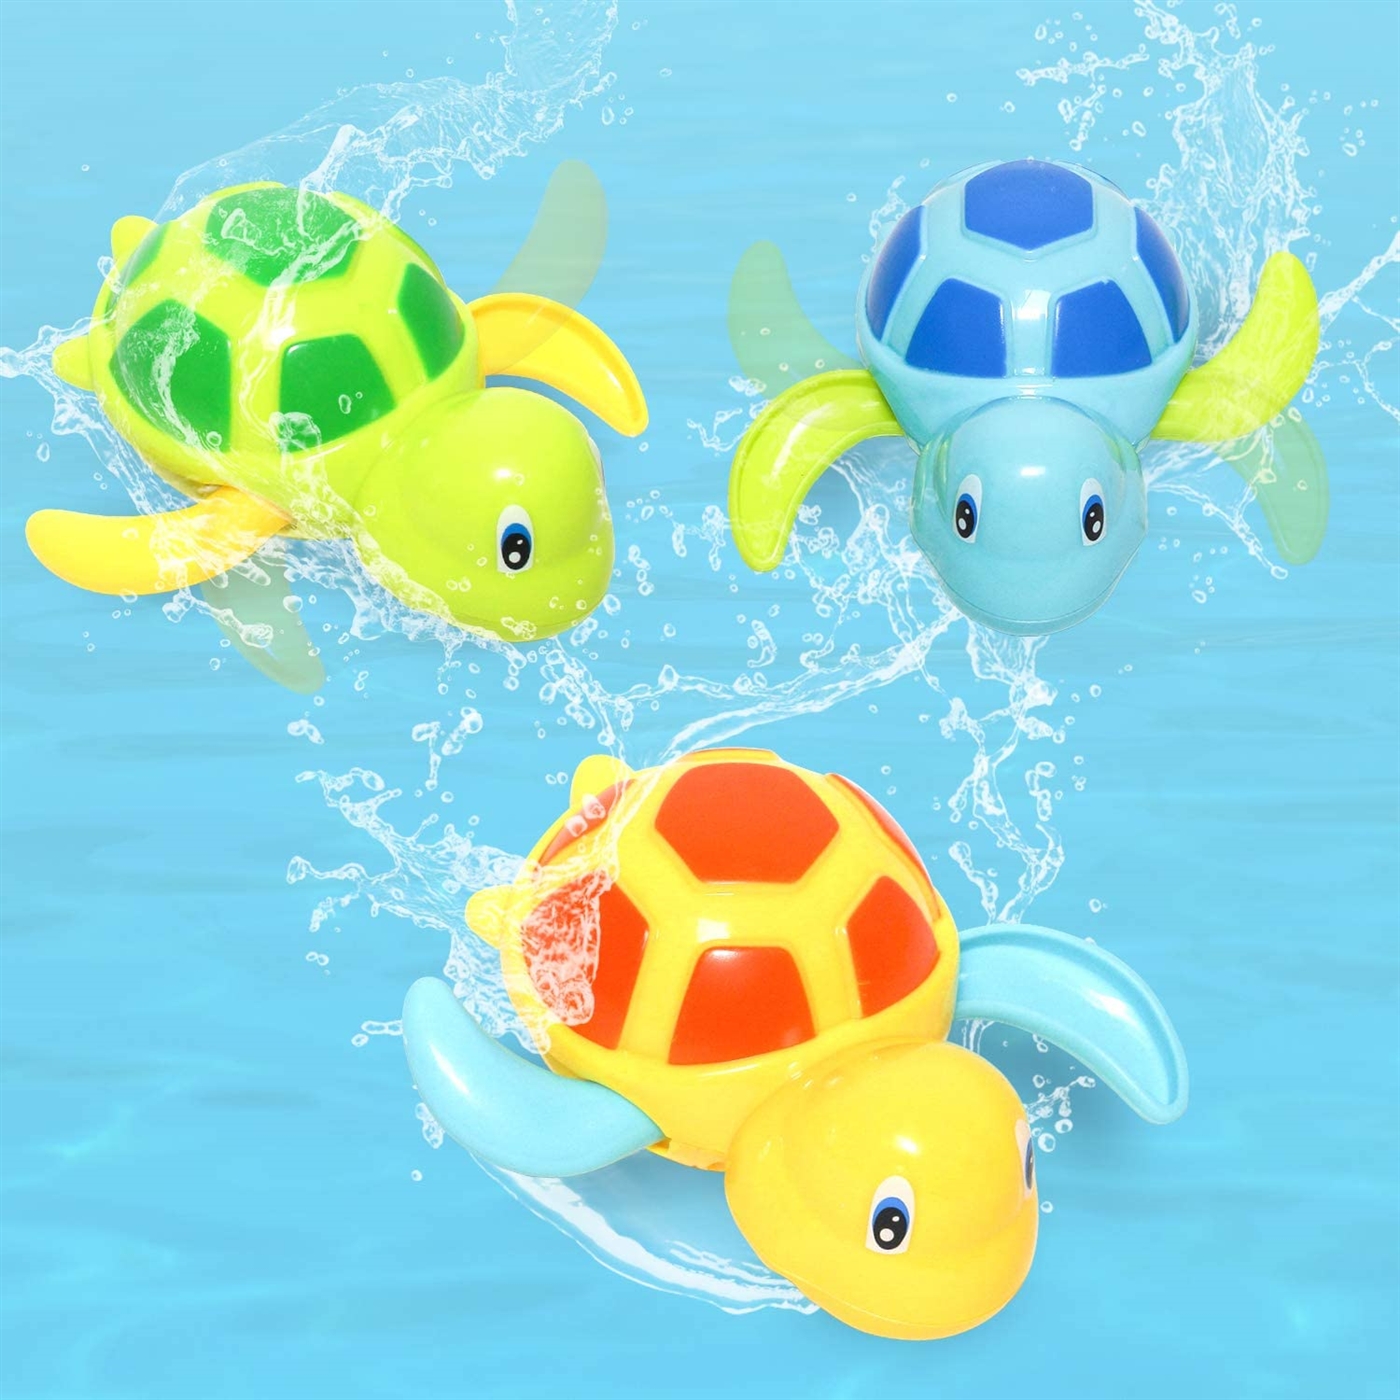 Kibtoy Turtle bath toy